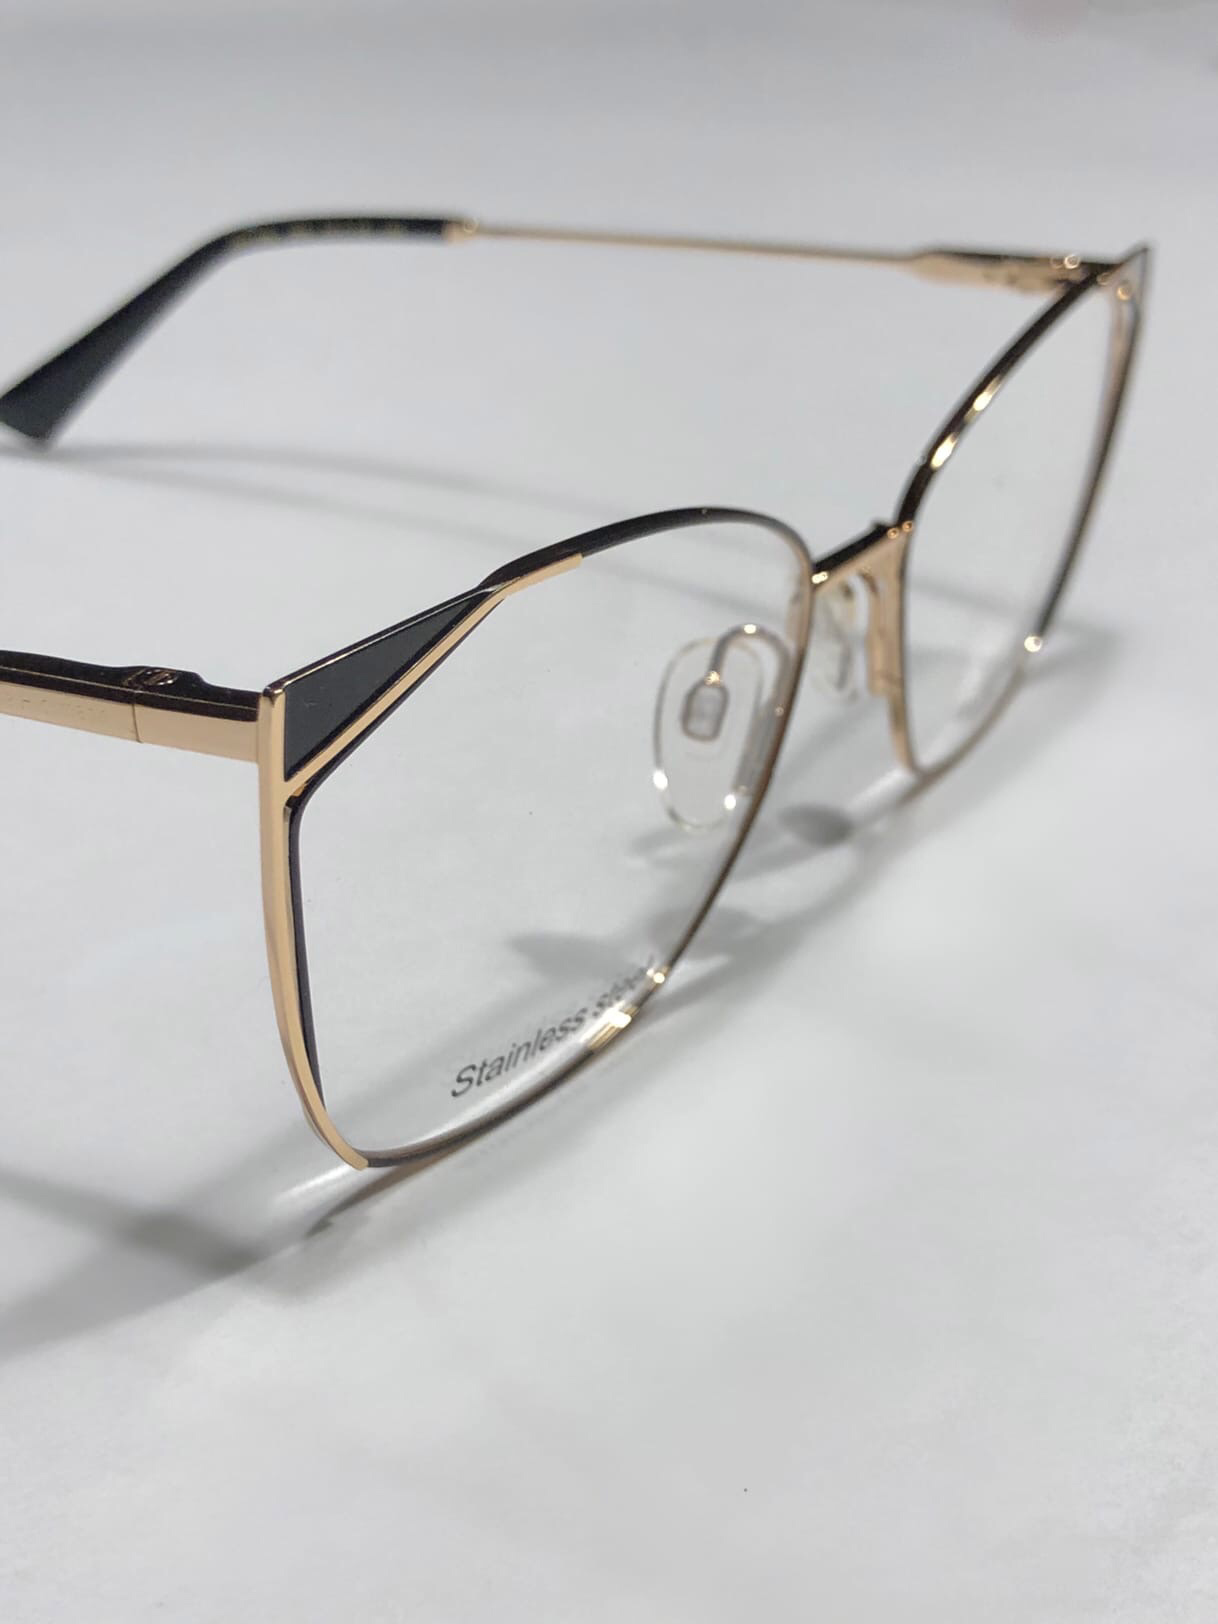 Можно ли пользоваться очками родных, если у вас одинаковое зрение?